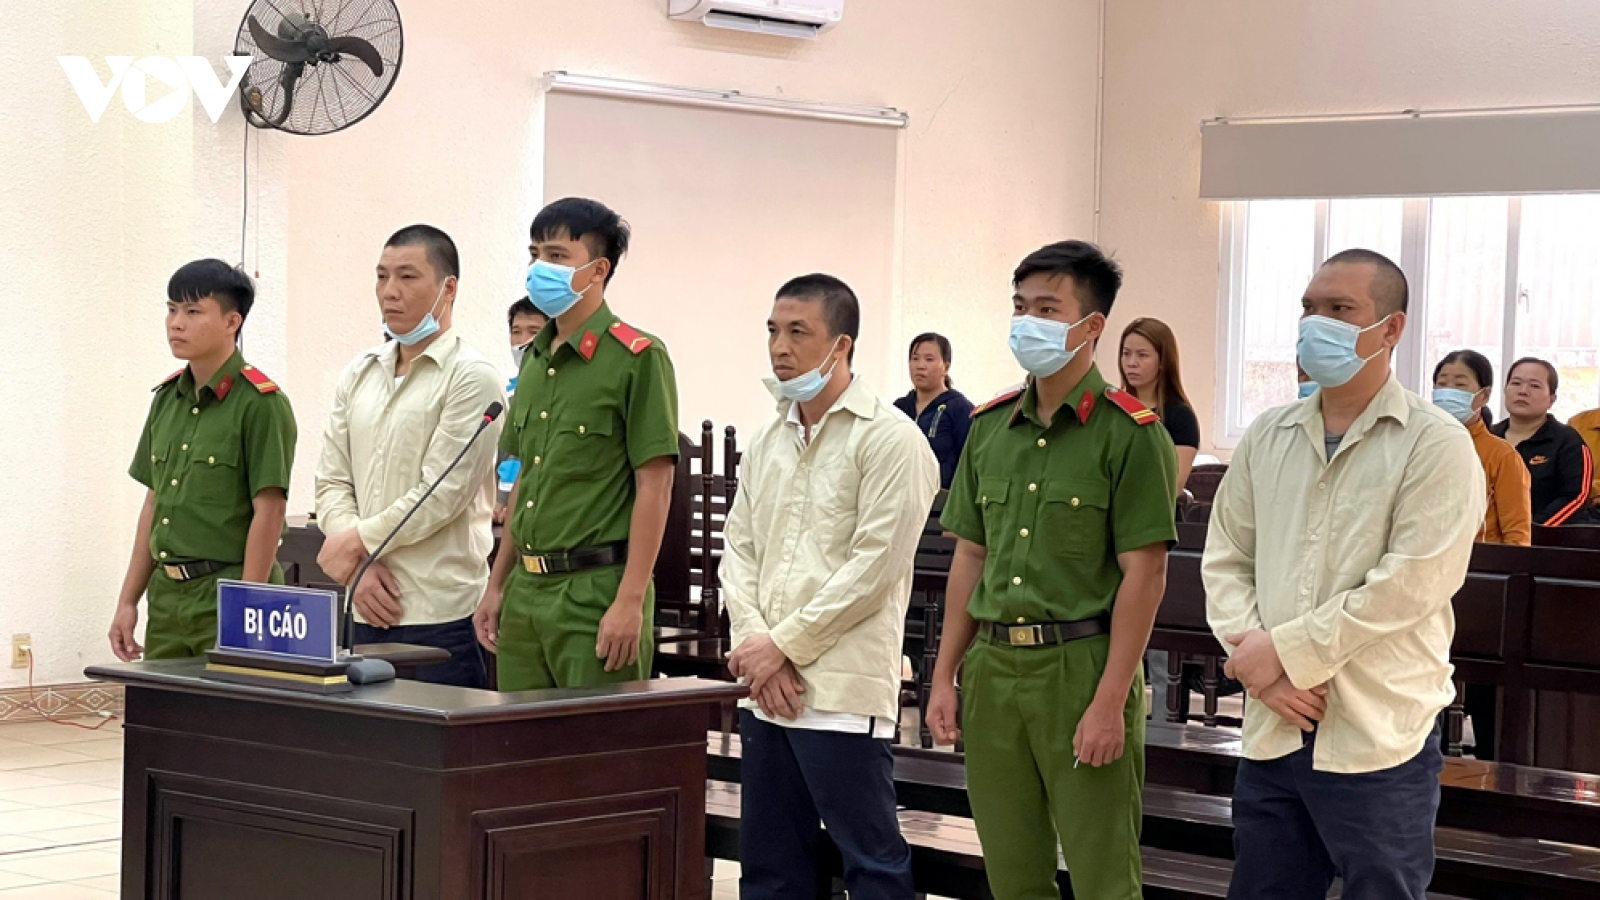 Nhóm "cát tặc" làm phó công an xã tử vong lãnh án 33 năm tù